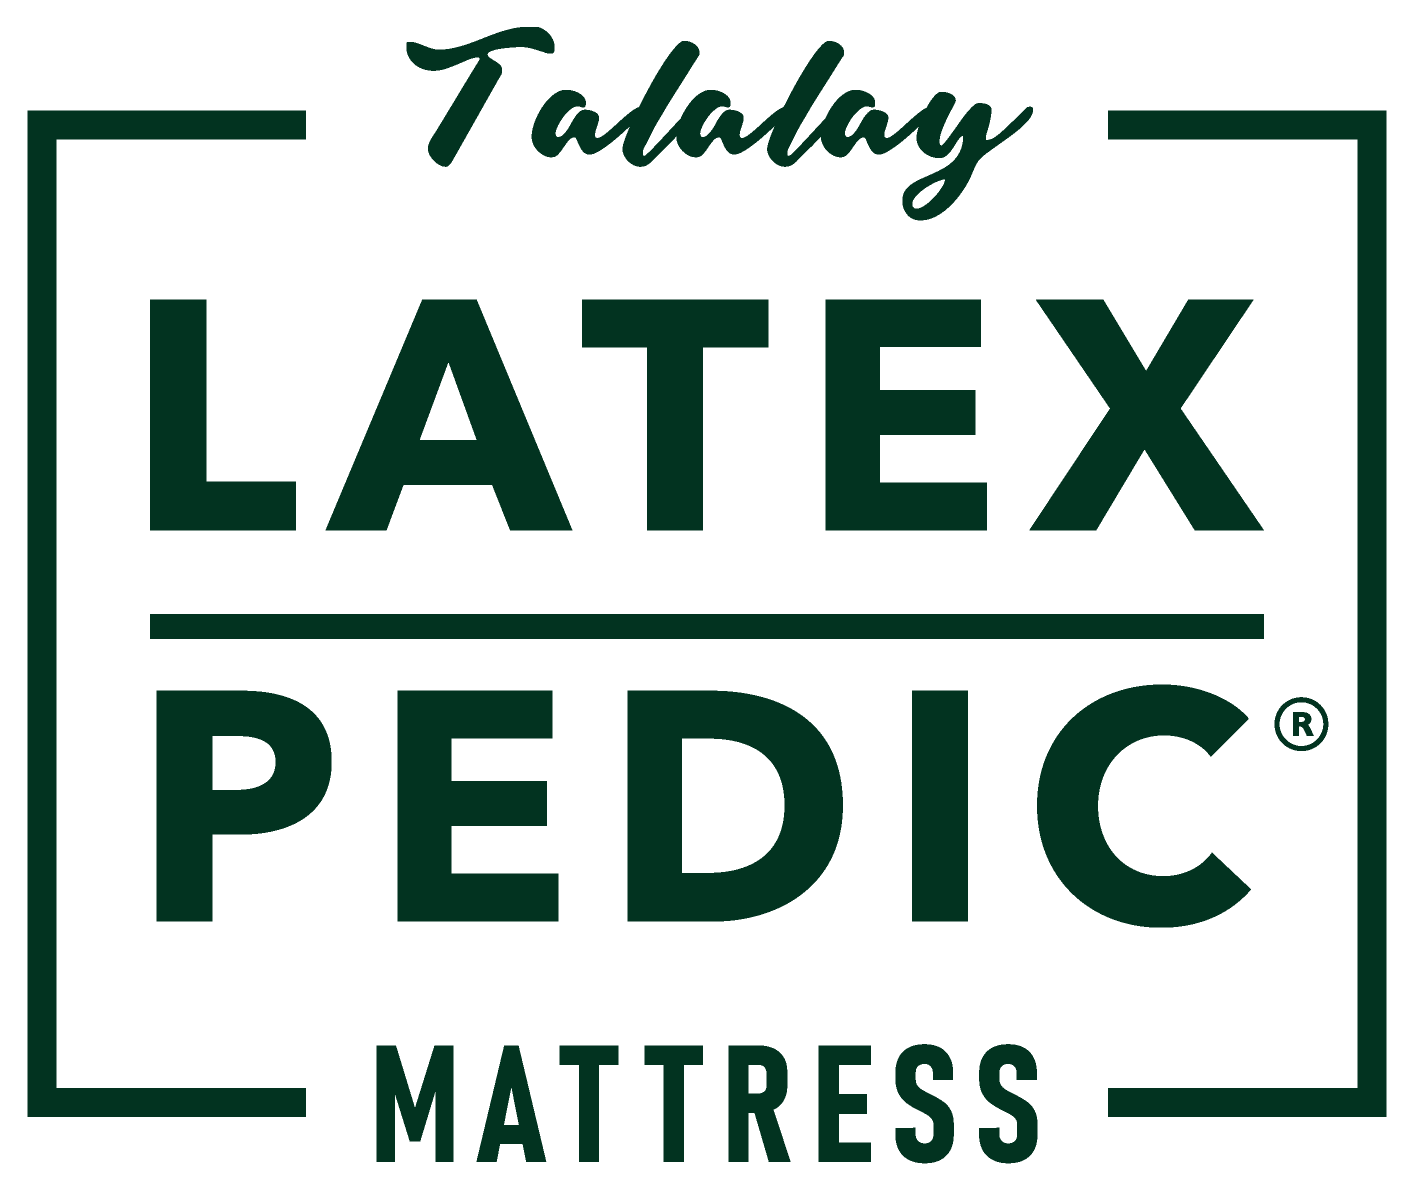 Newport Beach Latex Mattress Natural